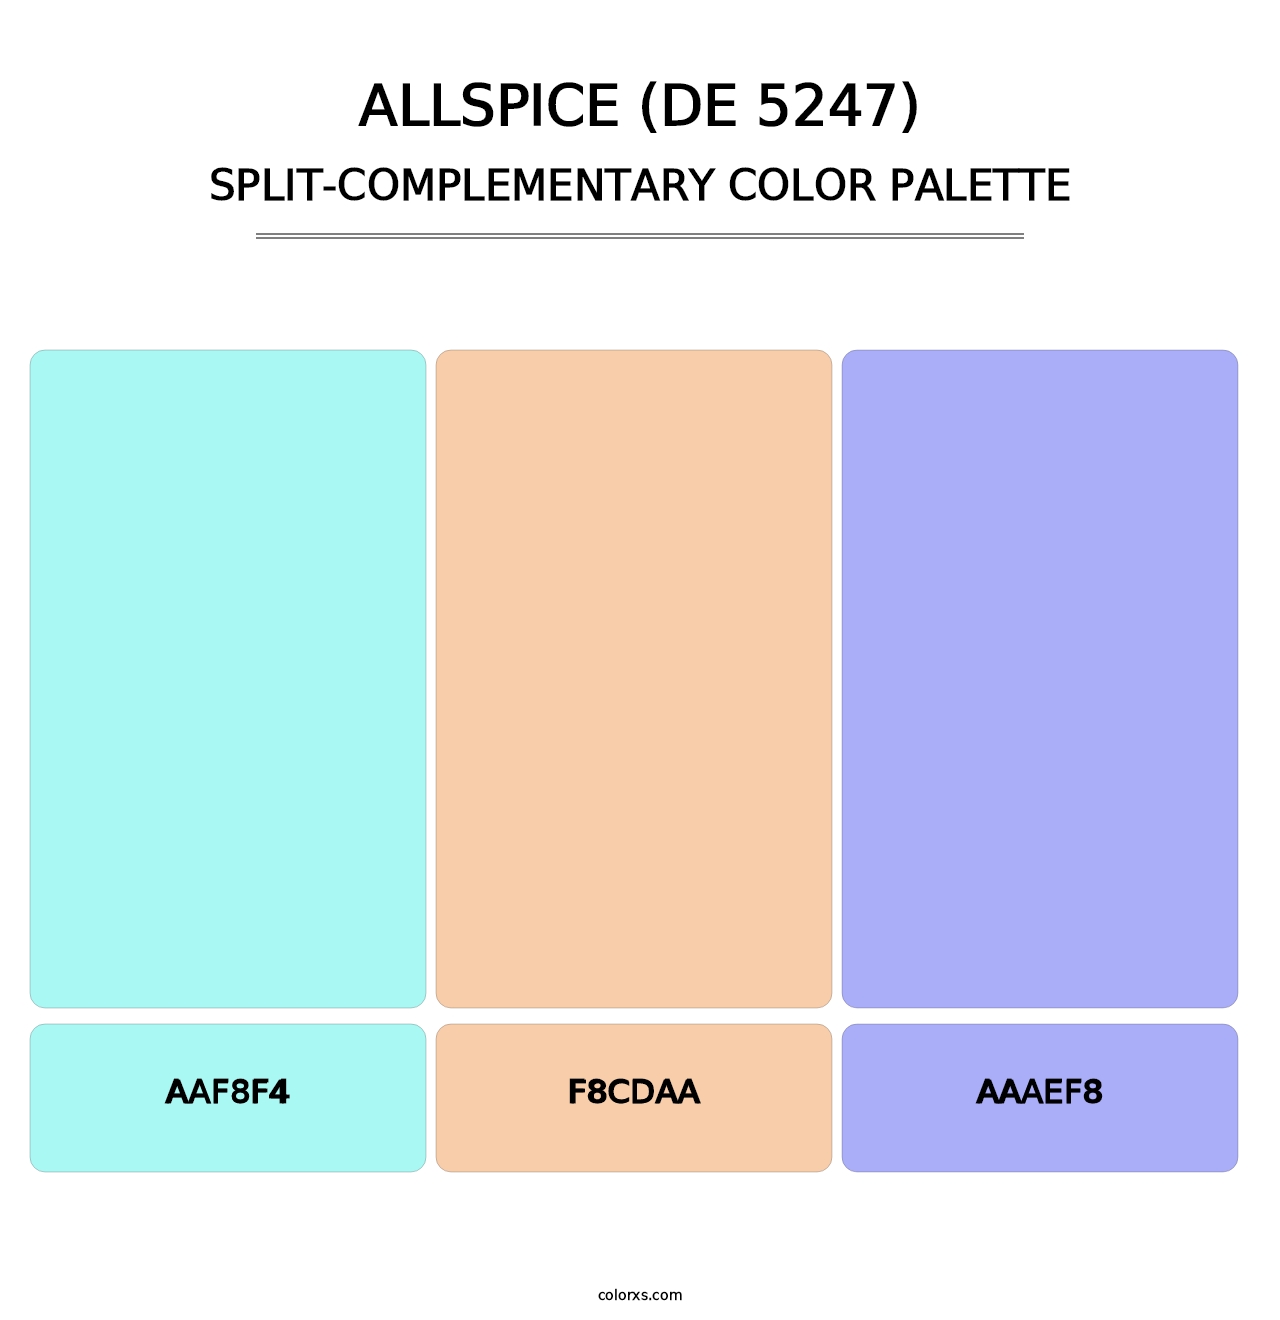 Allspice (DE 5247) - Split-Complementary Color Palette